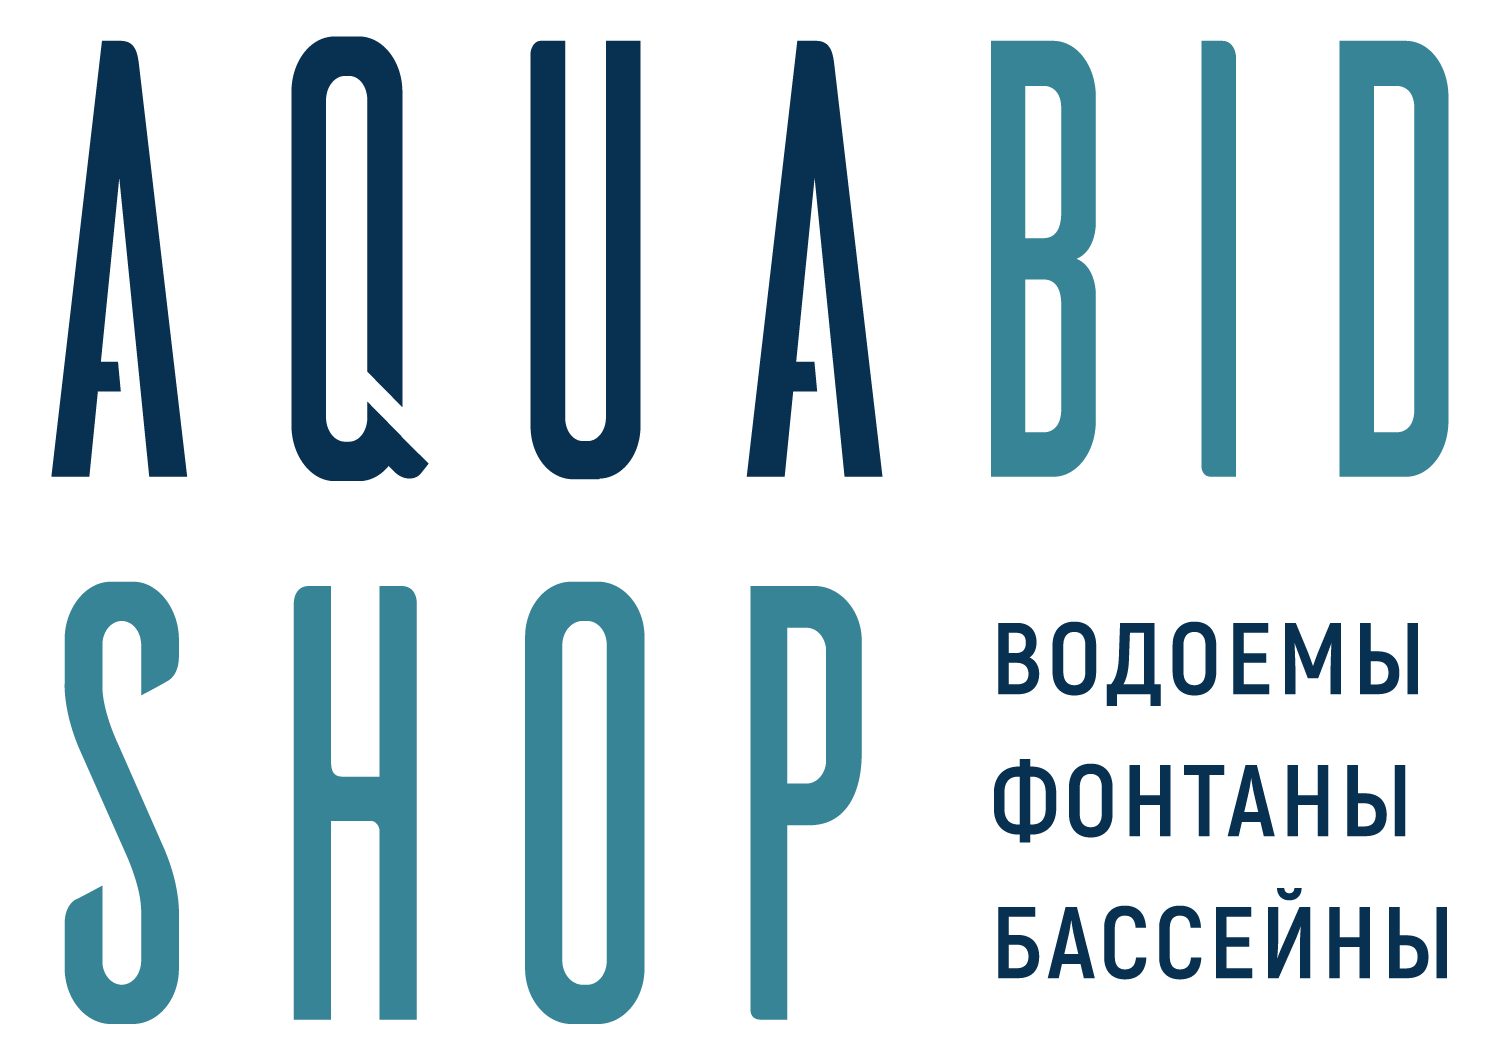 AquabidShop.ru - интернет-магазин оборудования для прудов, фонтанов, бассейнов